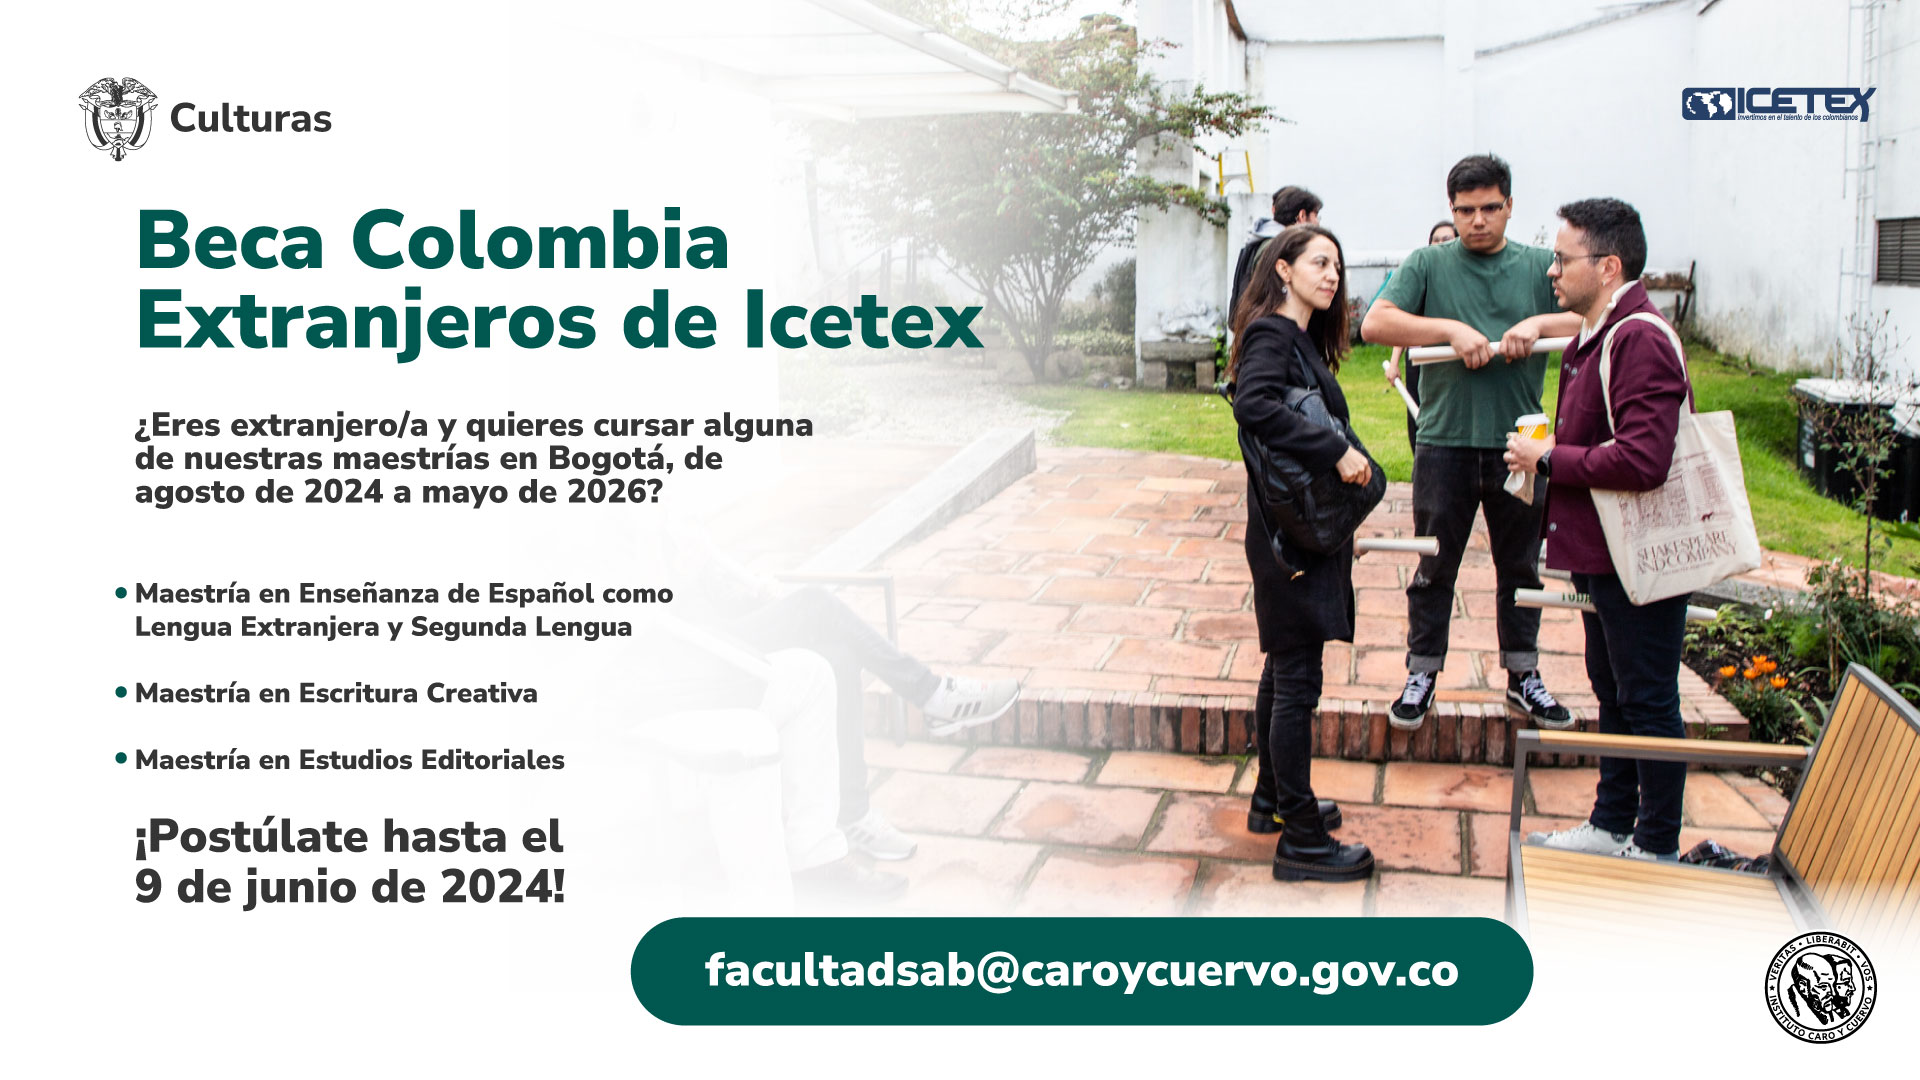 Diseño gráfico que provee información sobre la beca Colombia extranjeros de ICETEX.